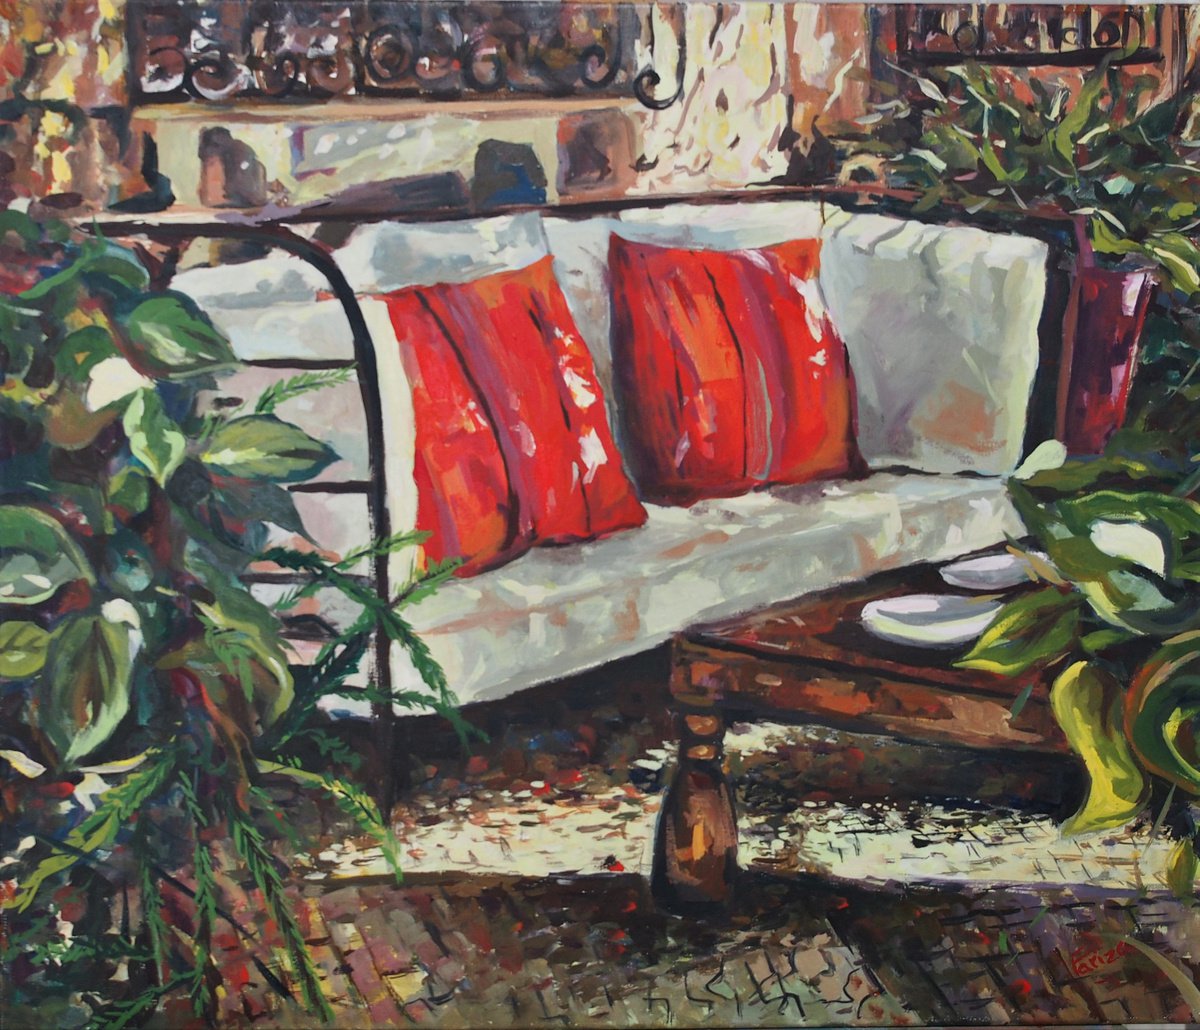 Sofa con cojines rojos by Amaya Fernandez Fariza